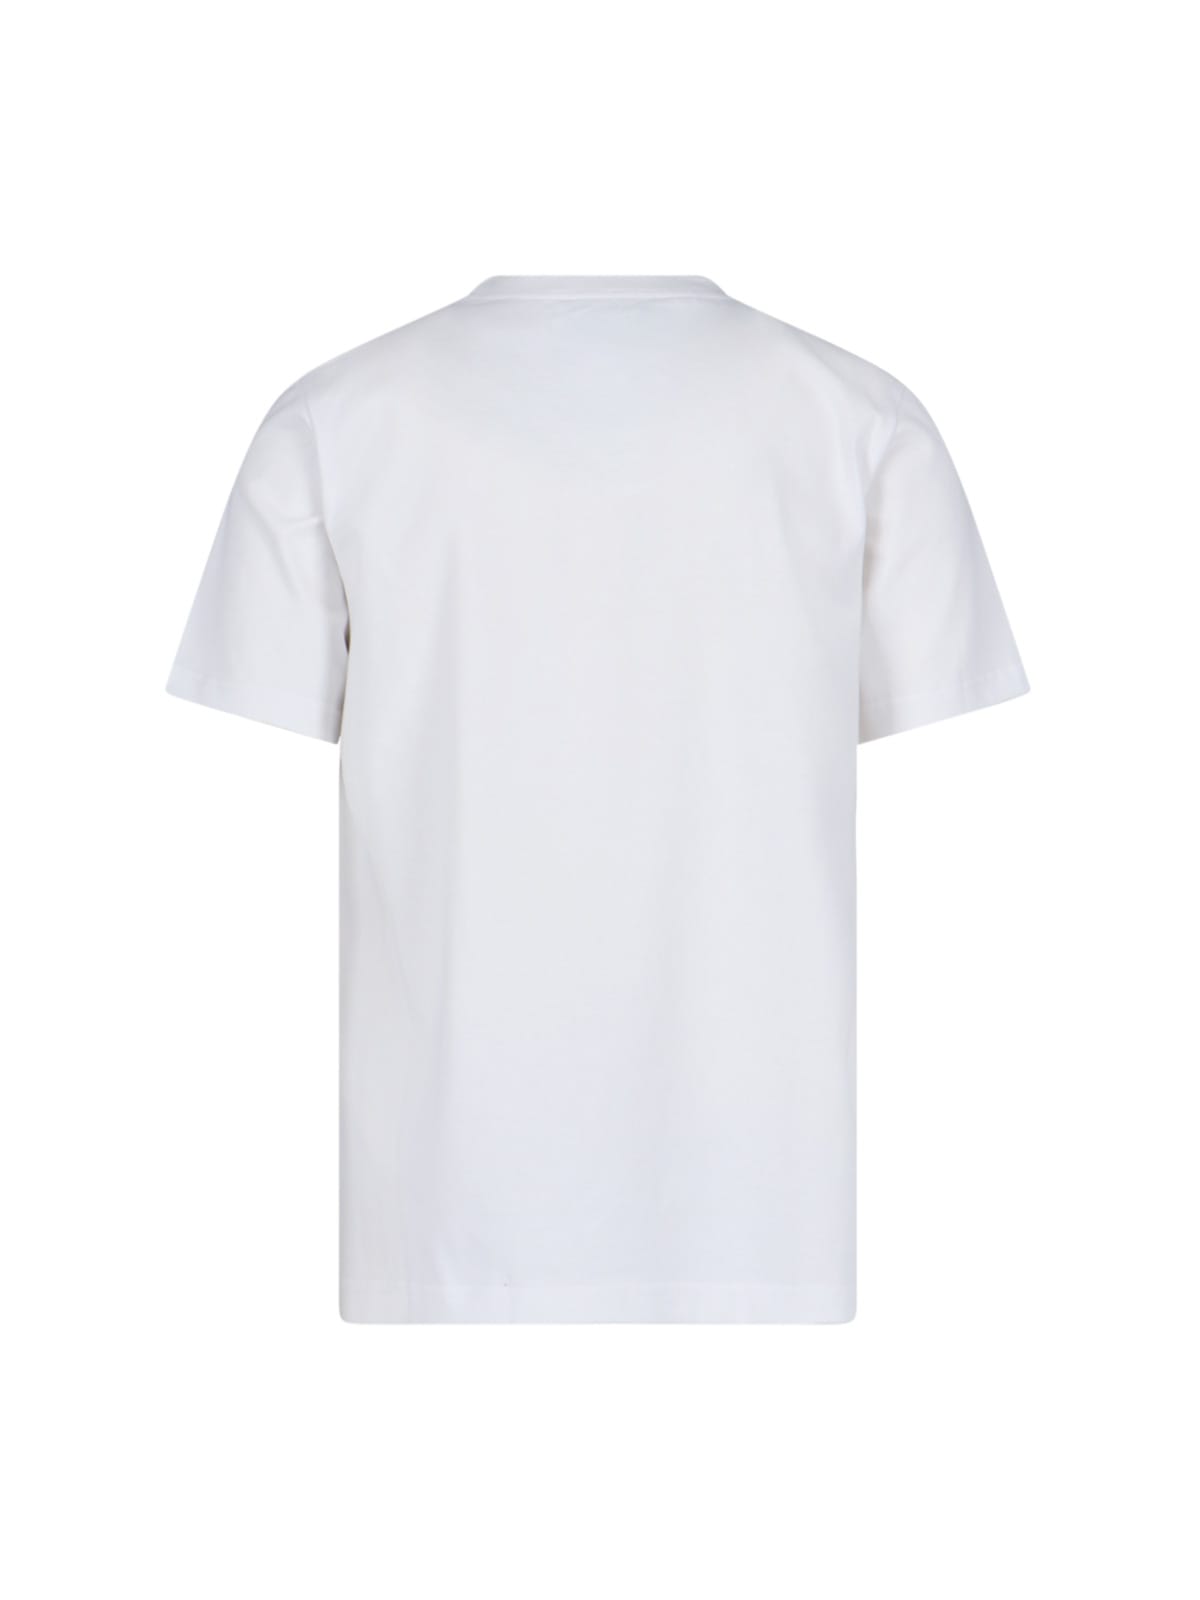 Shop Casablanca Tennis Club T-shirt In White